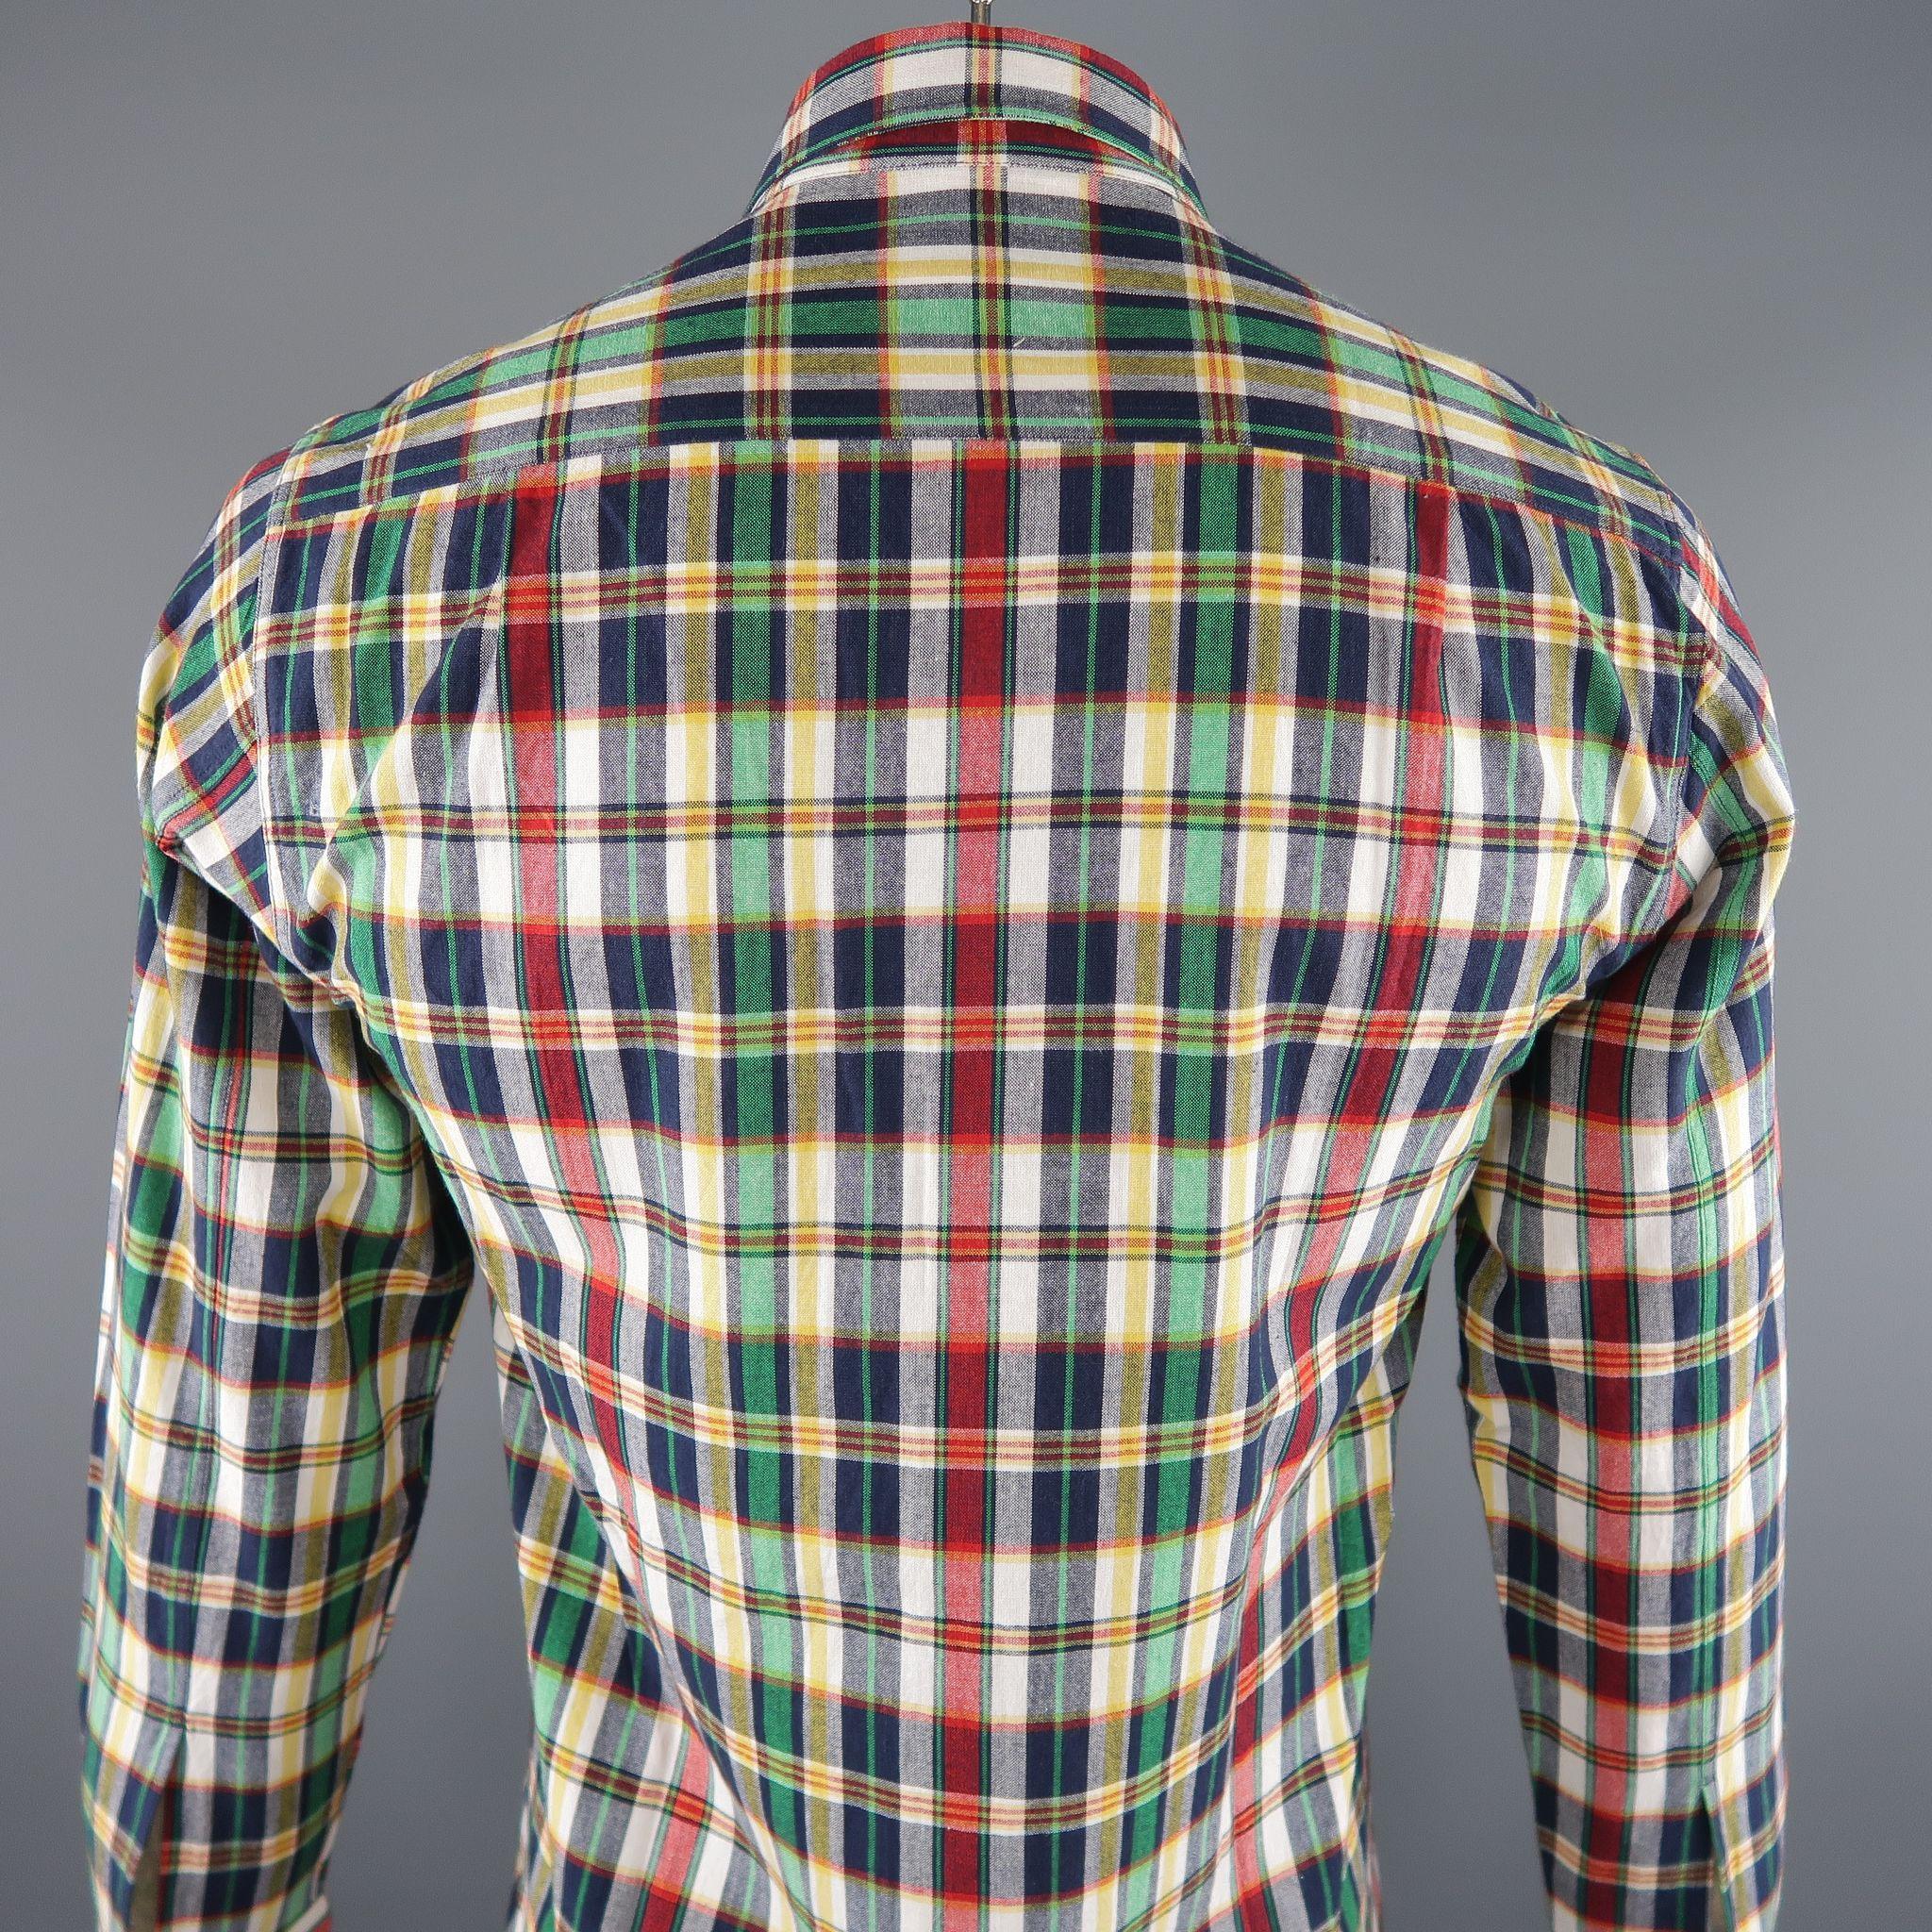 AGNES B. Size S Multi-Color Plaid Cotton Button Up Long Sleeve Shirt 1